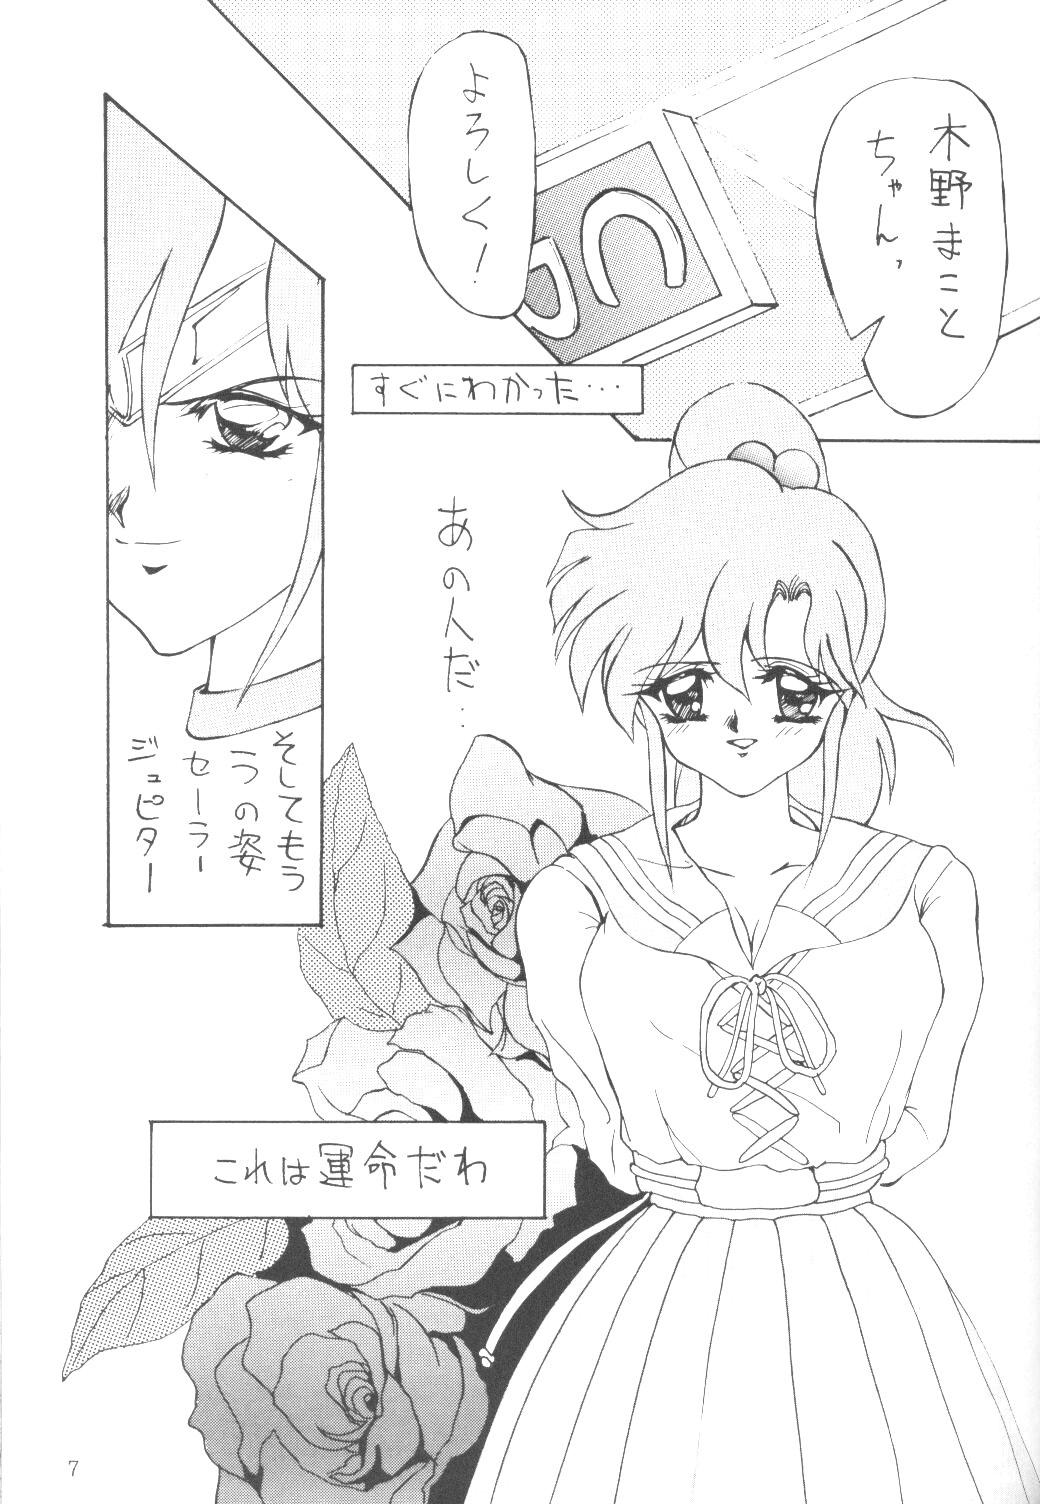 Nurumassage ALIVE AMI LOST - Sailor moon Ejaculation - Page 6